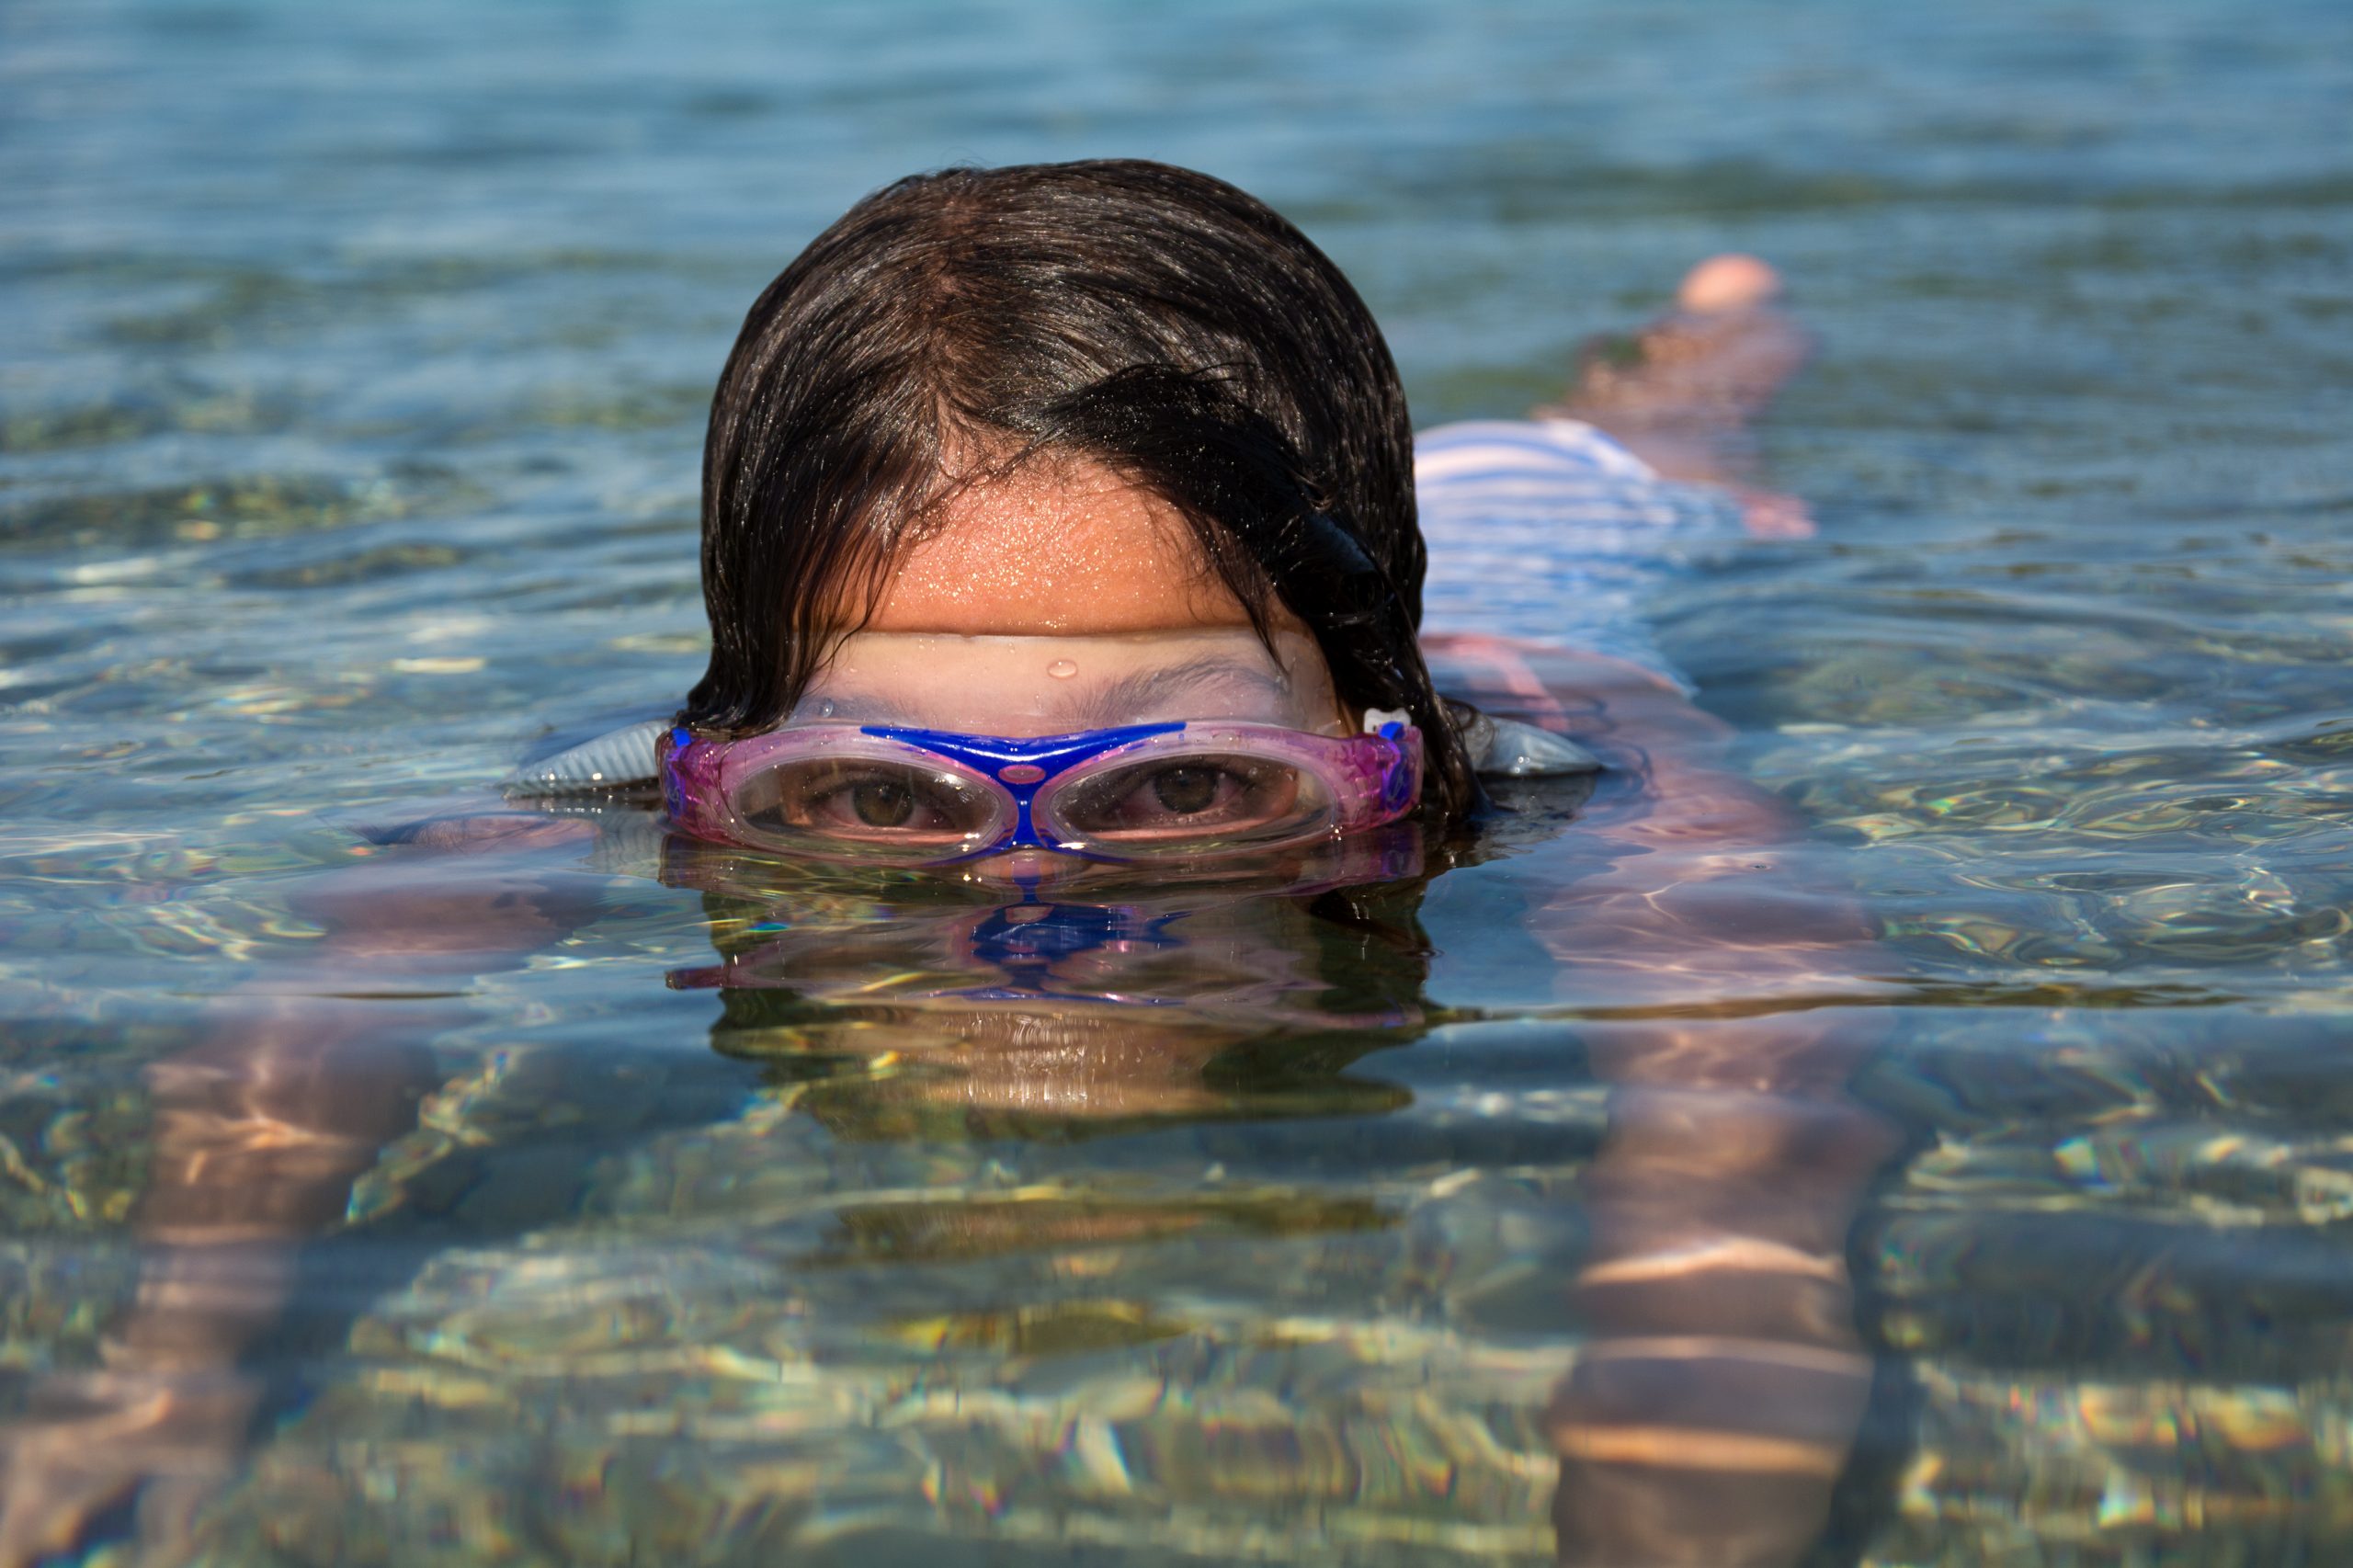 တစ်ကိုယ်ရေအမျိုးသမီးတွေအတွက် ပင်လယ်ထဲမှာ ရေကူးနေတာကိုမြင်ရတဲ့ အဓိပ္ပာယ်